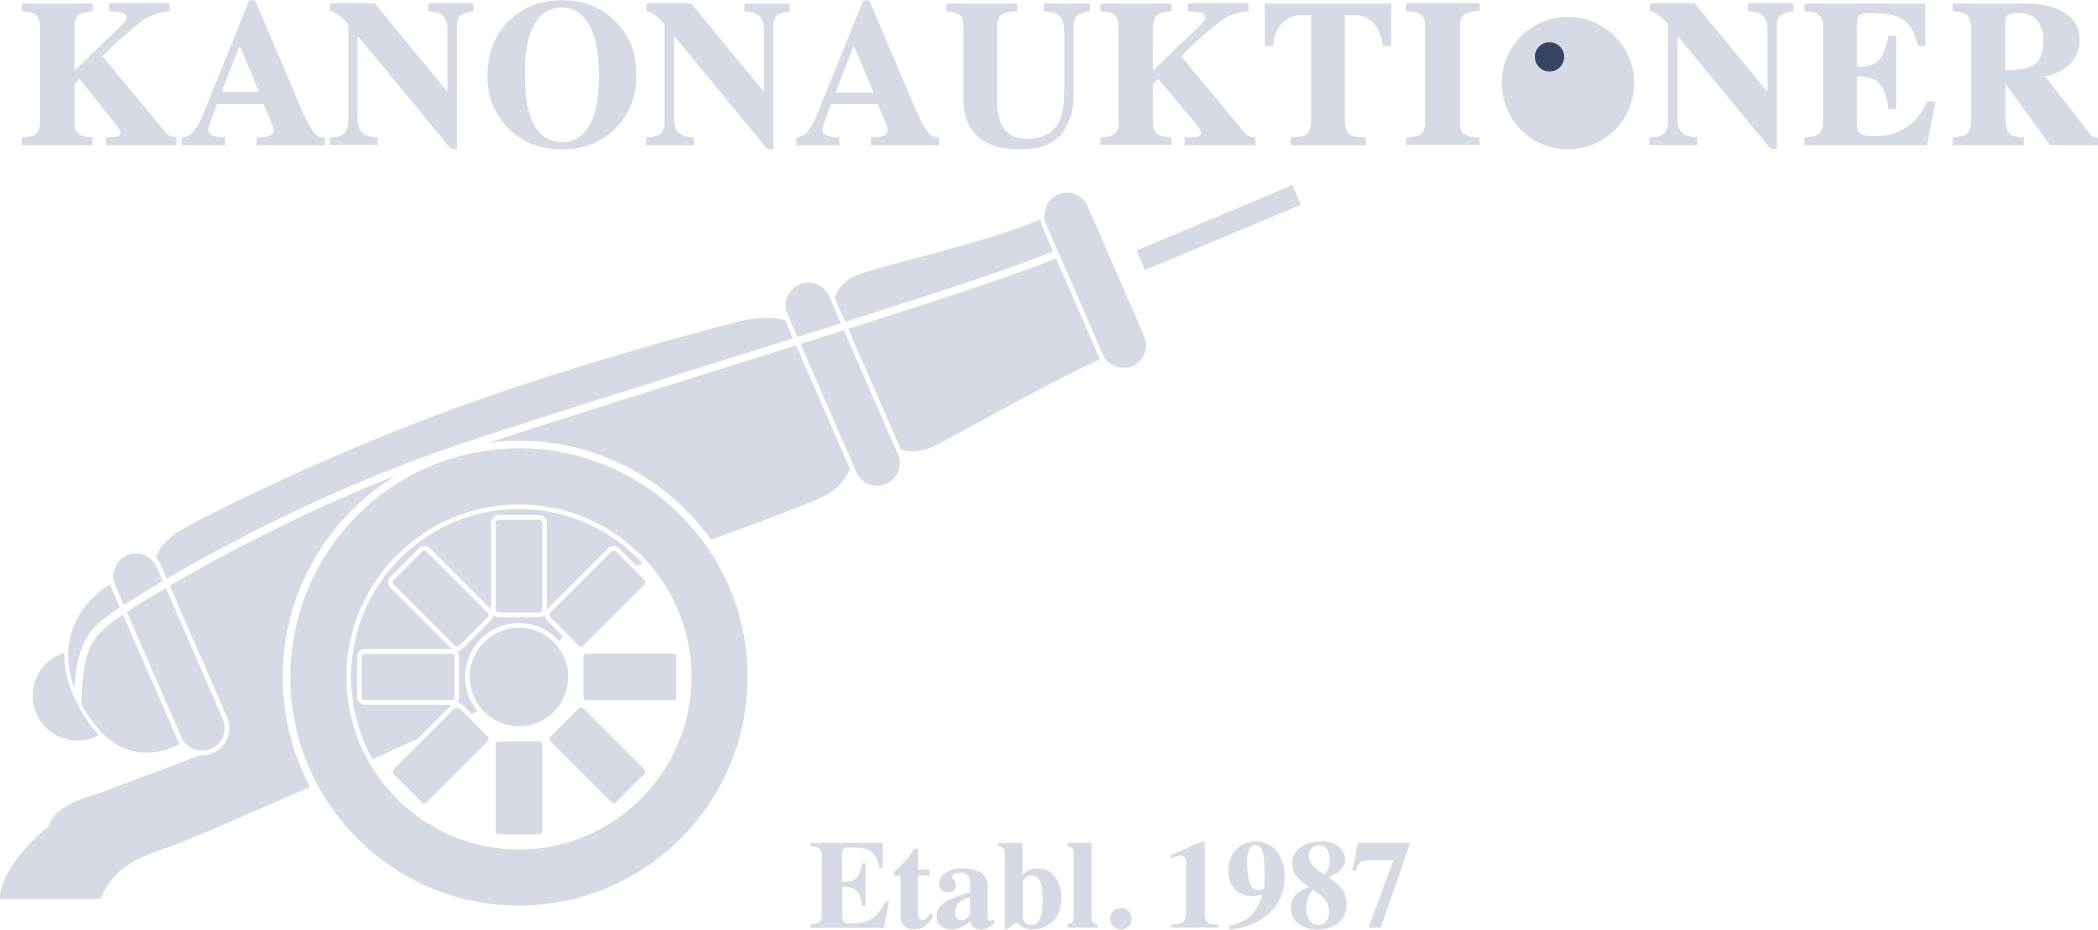 Kanonauktioner logo